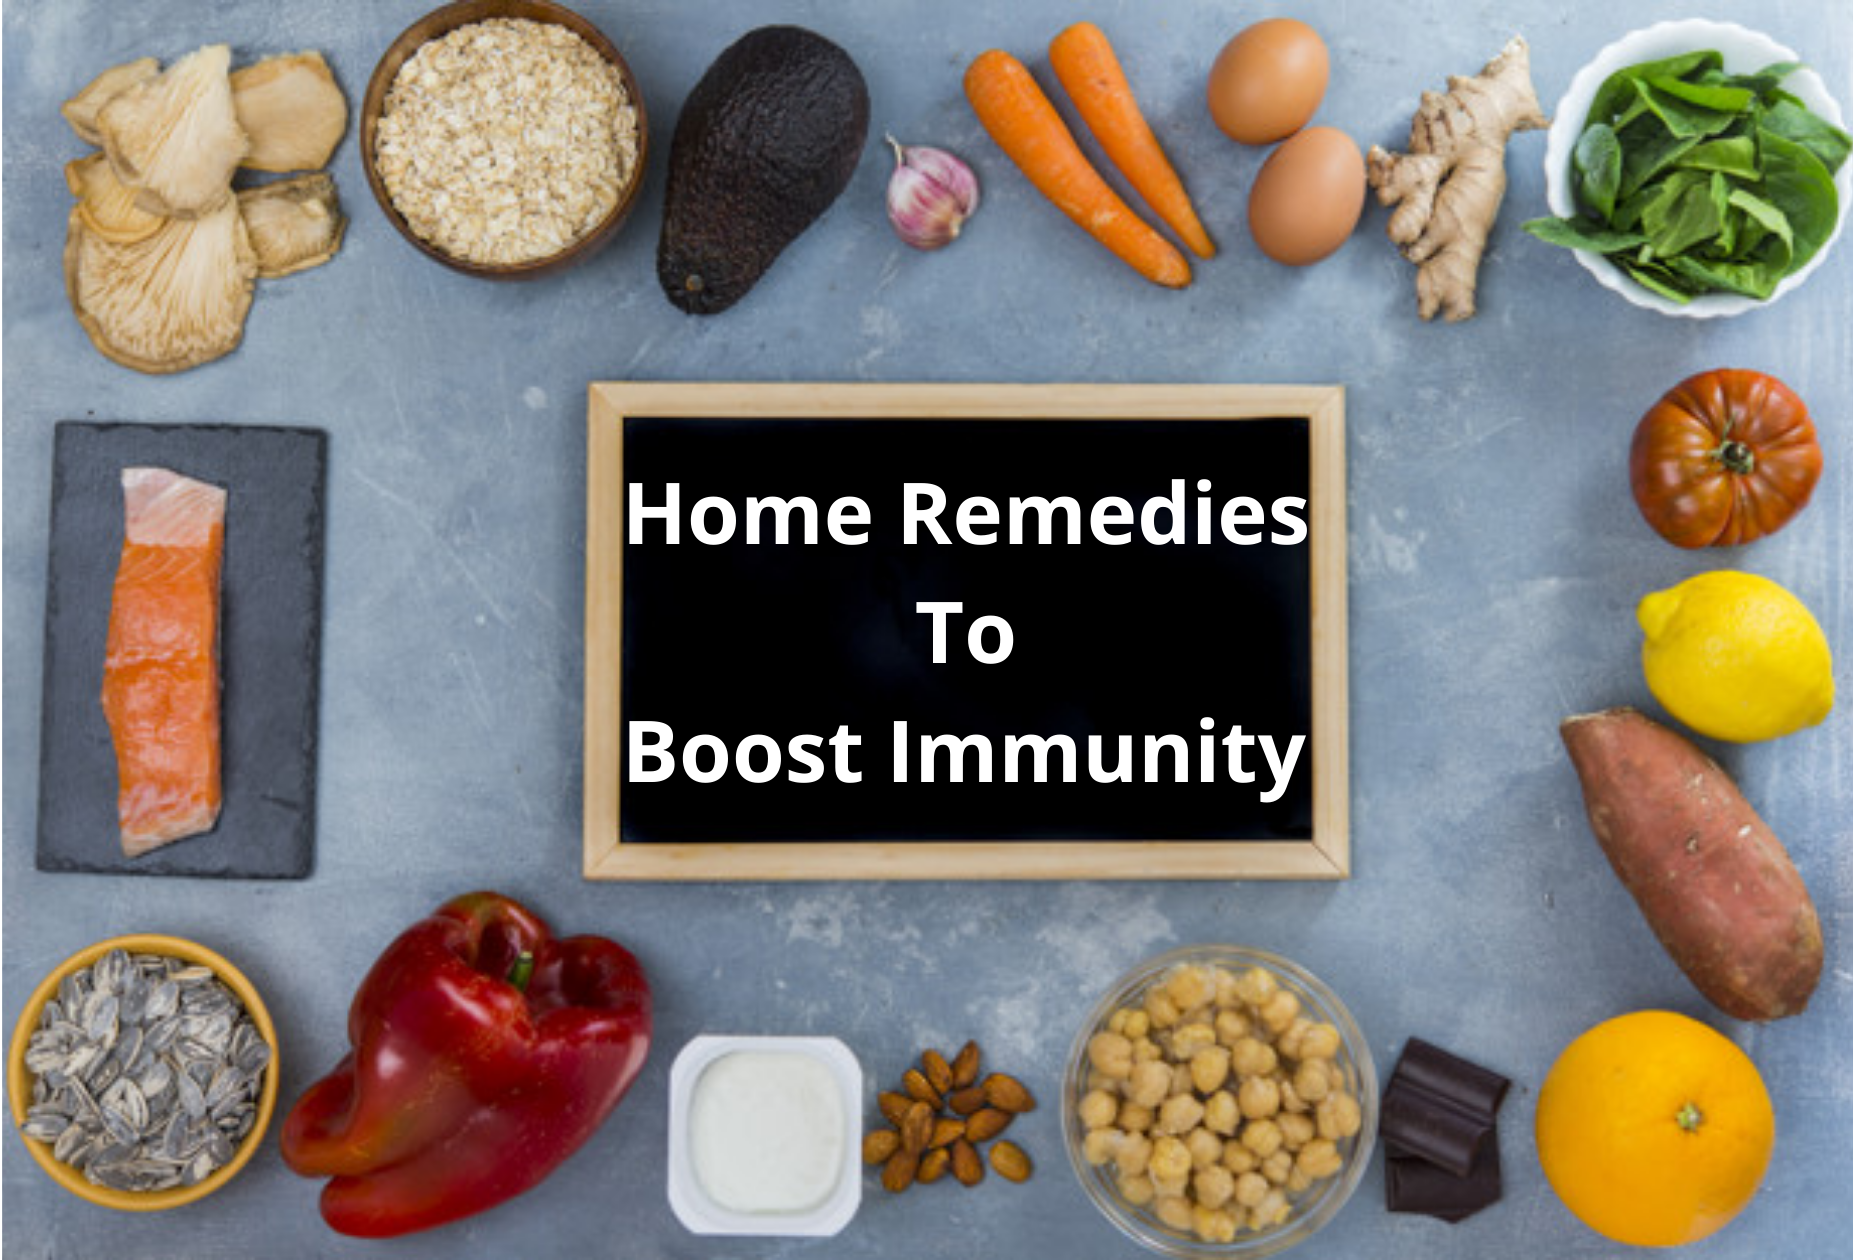 Immune-boosting natural remedies